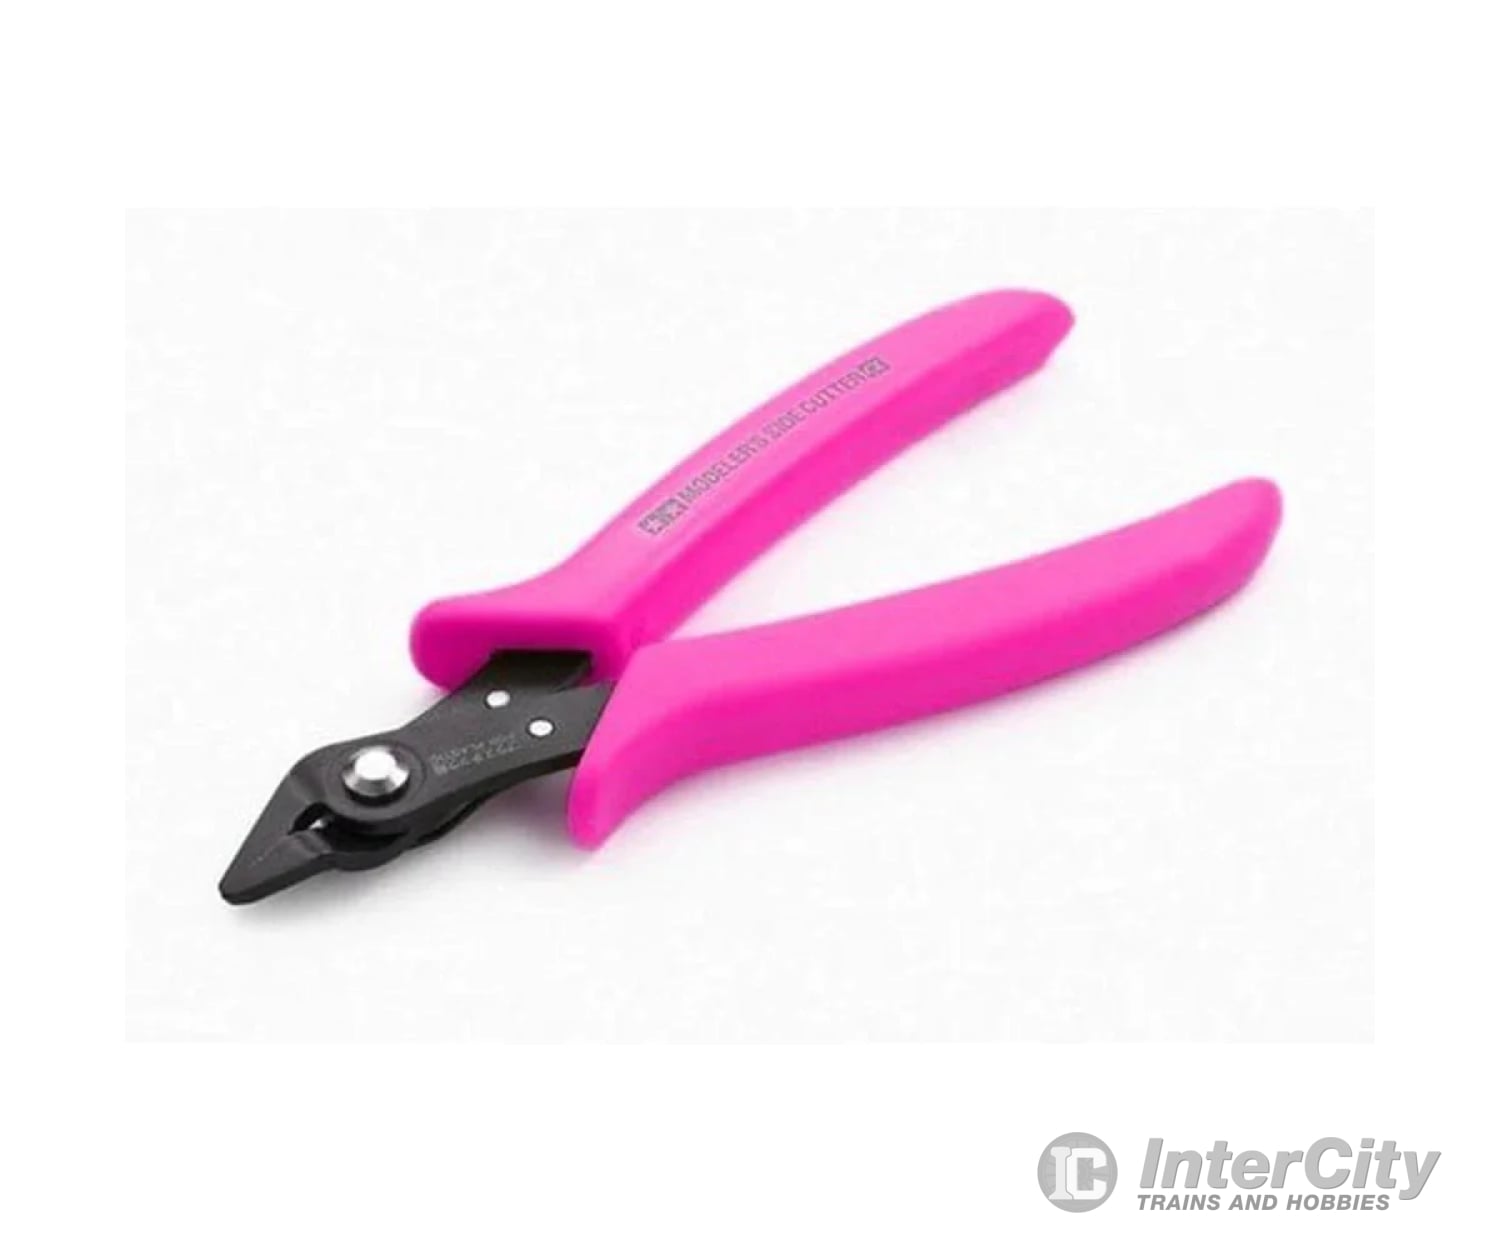 Tamiya 69942 Side Cutter Rose Pink Tools